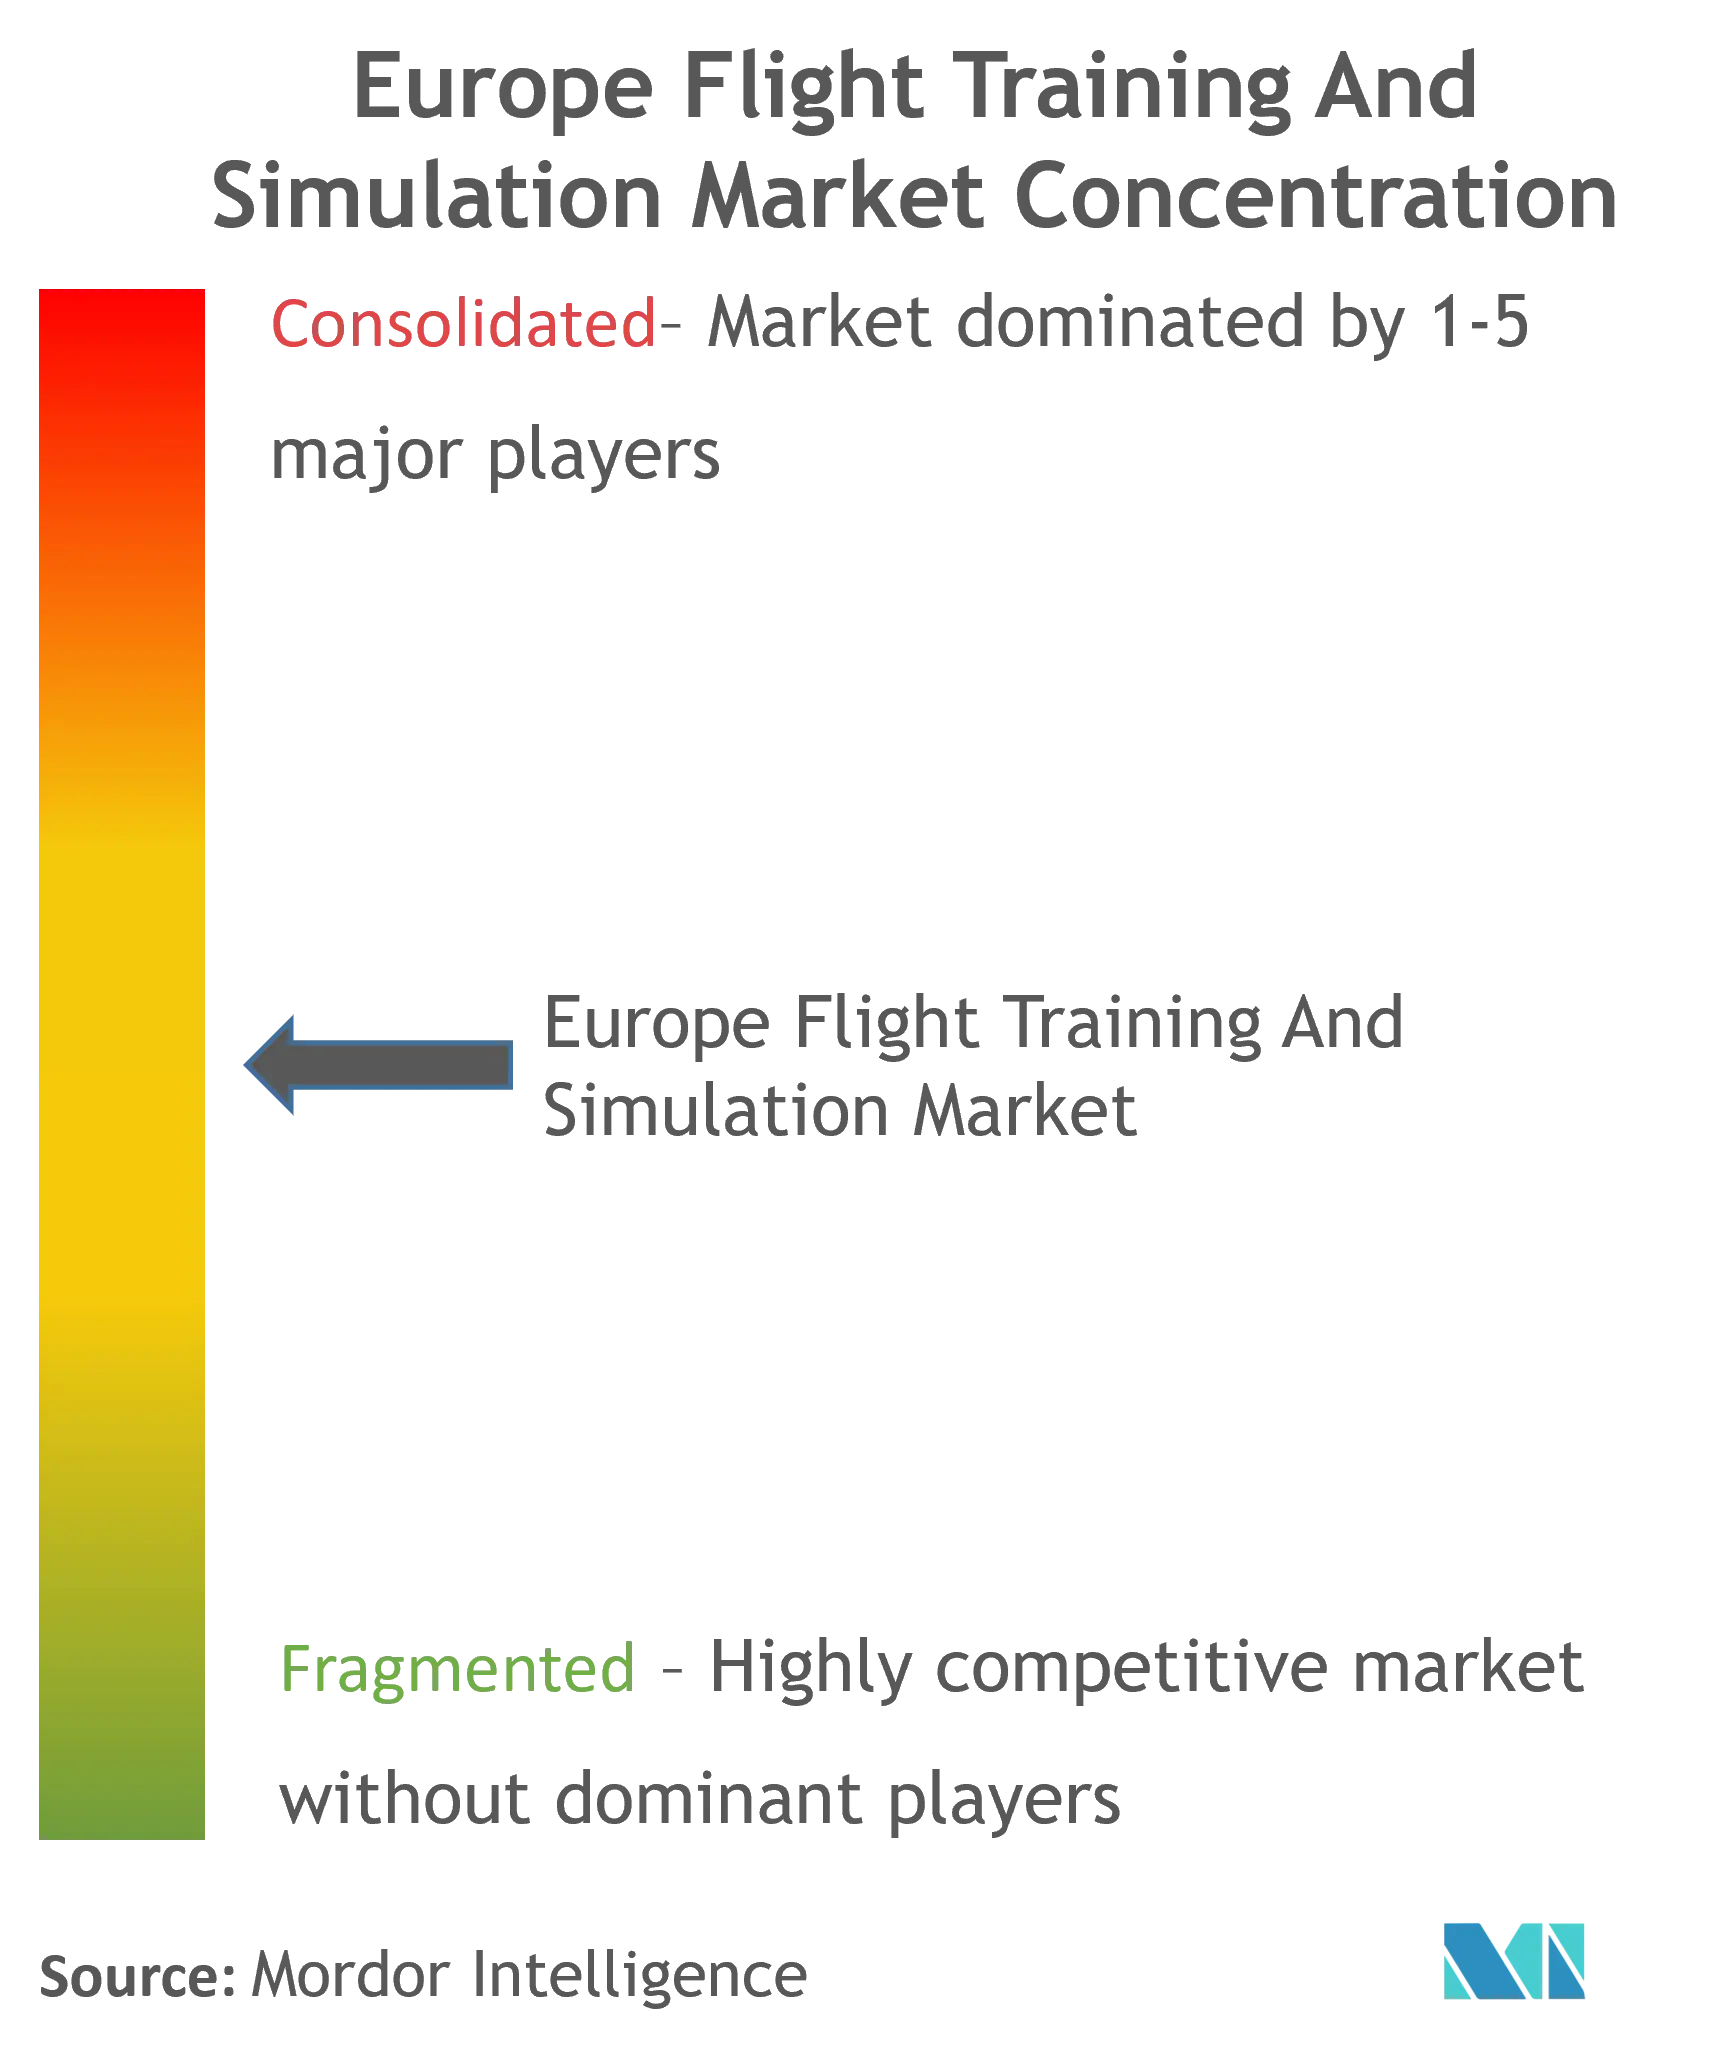 Formation et simulation de vol en EuropeConcentration du marché